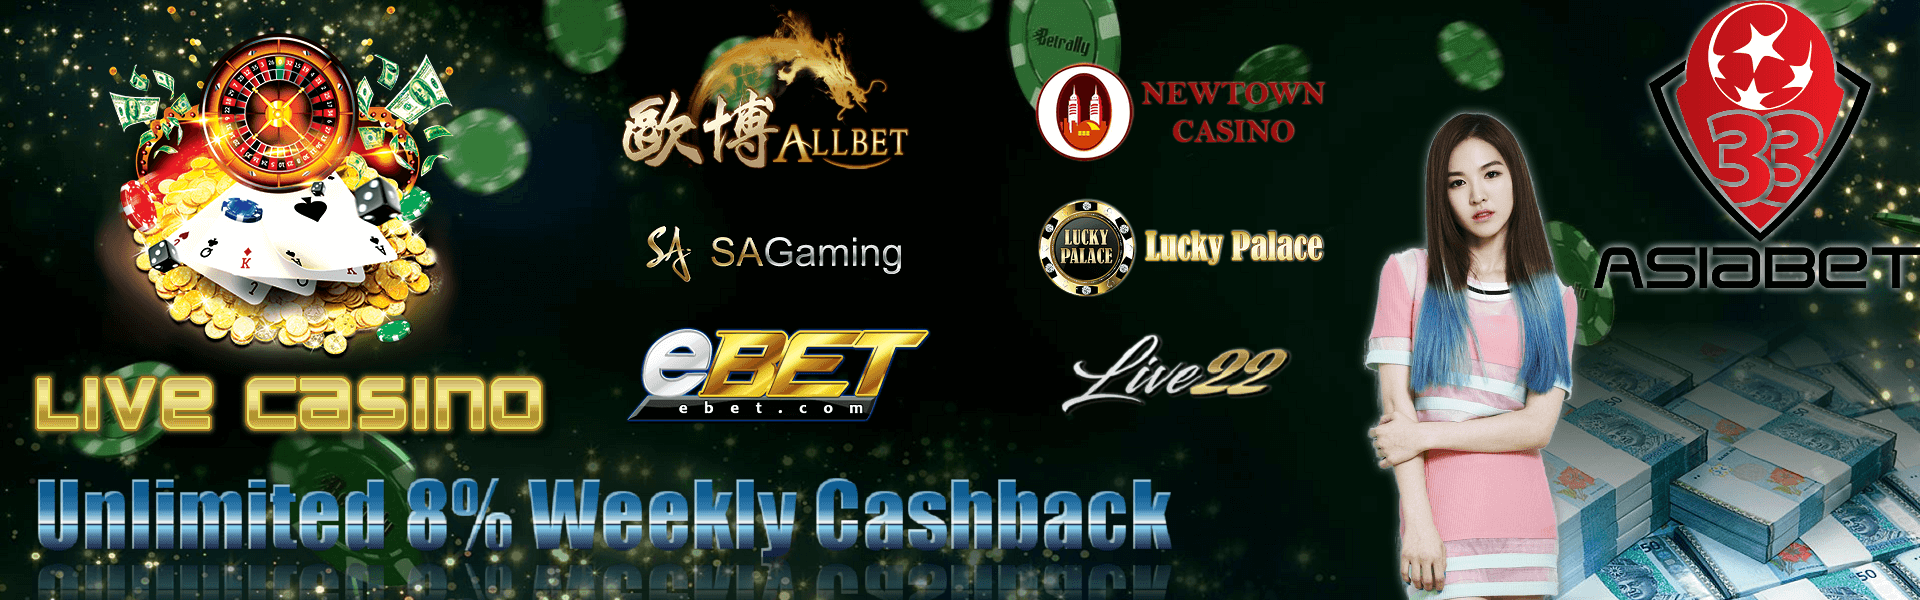 malaysia casino free bet powered by ipb